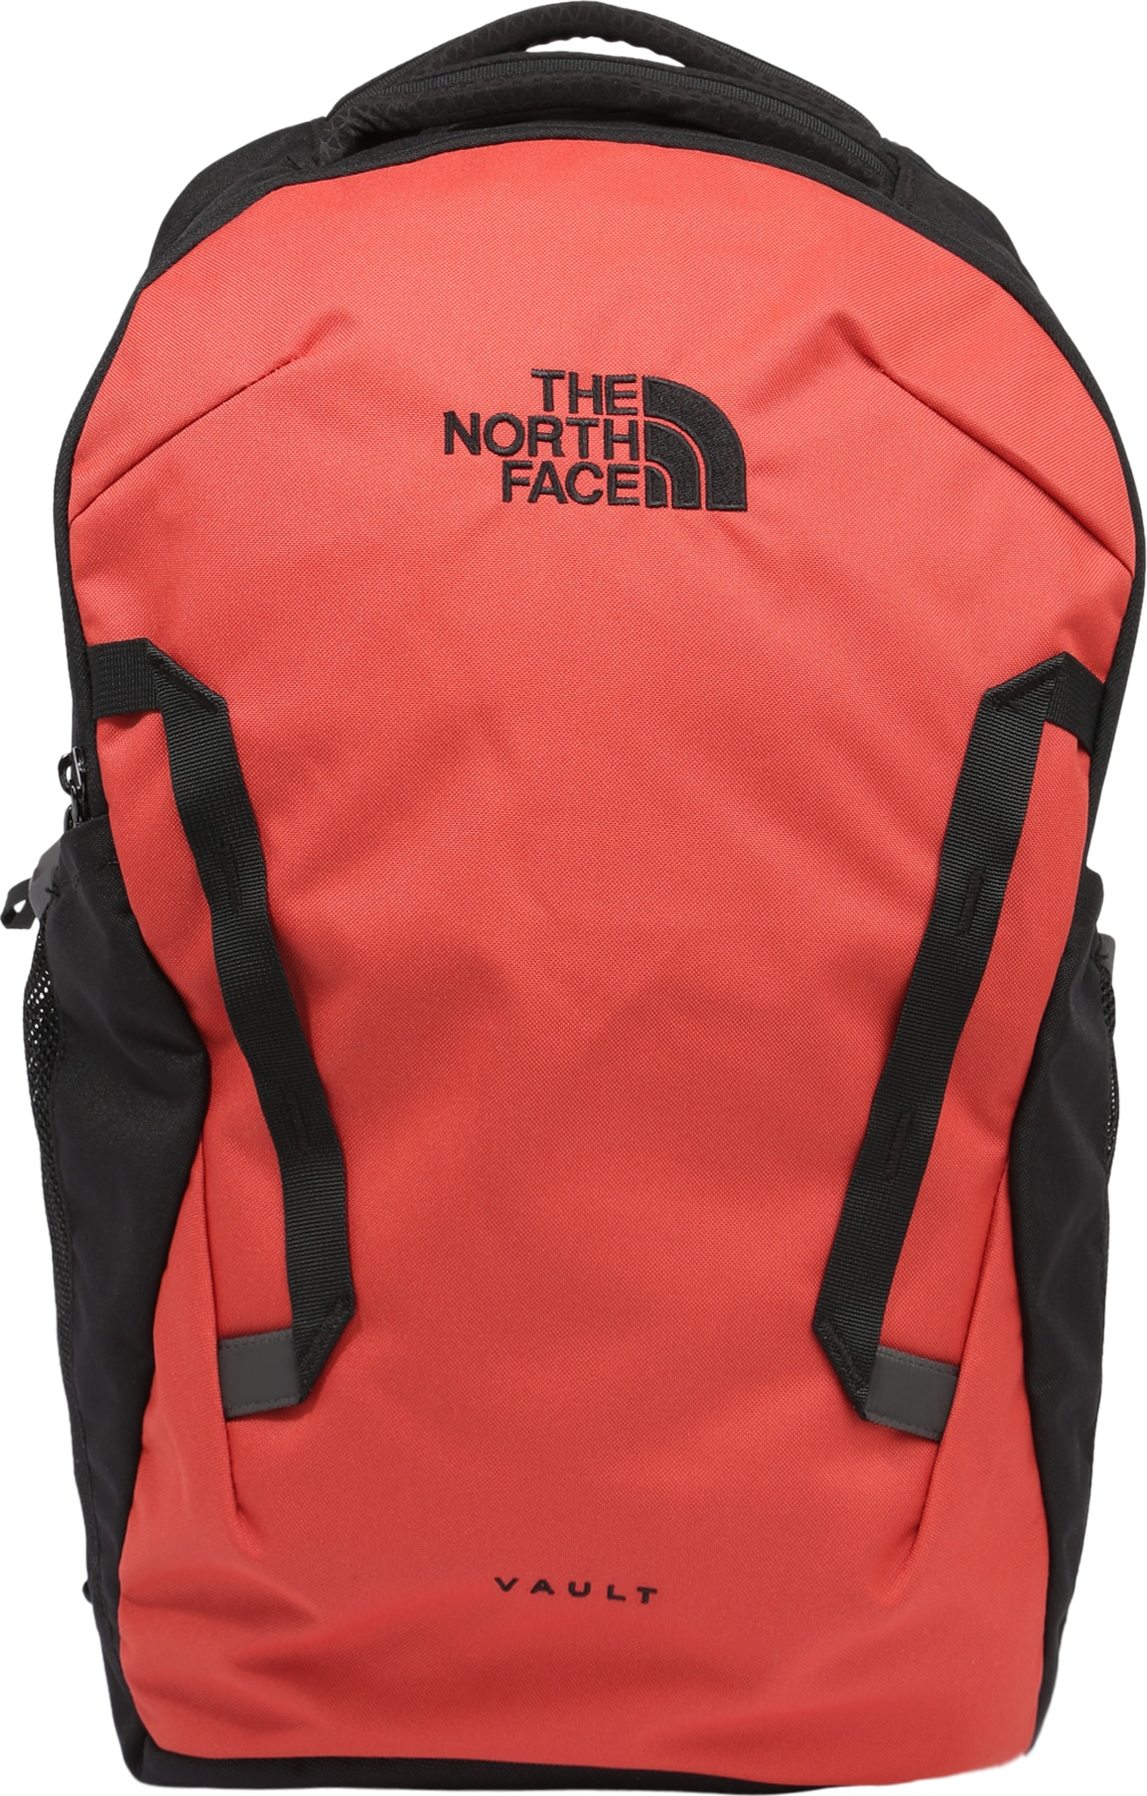 THE NORTH FACE Sportovní batoh 'Vault' červená / černá